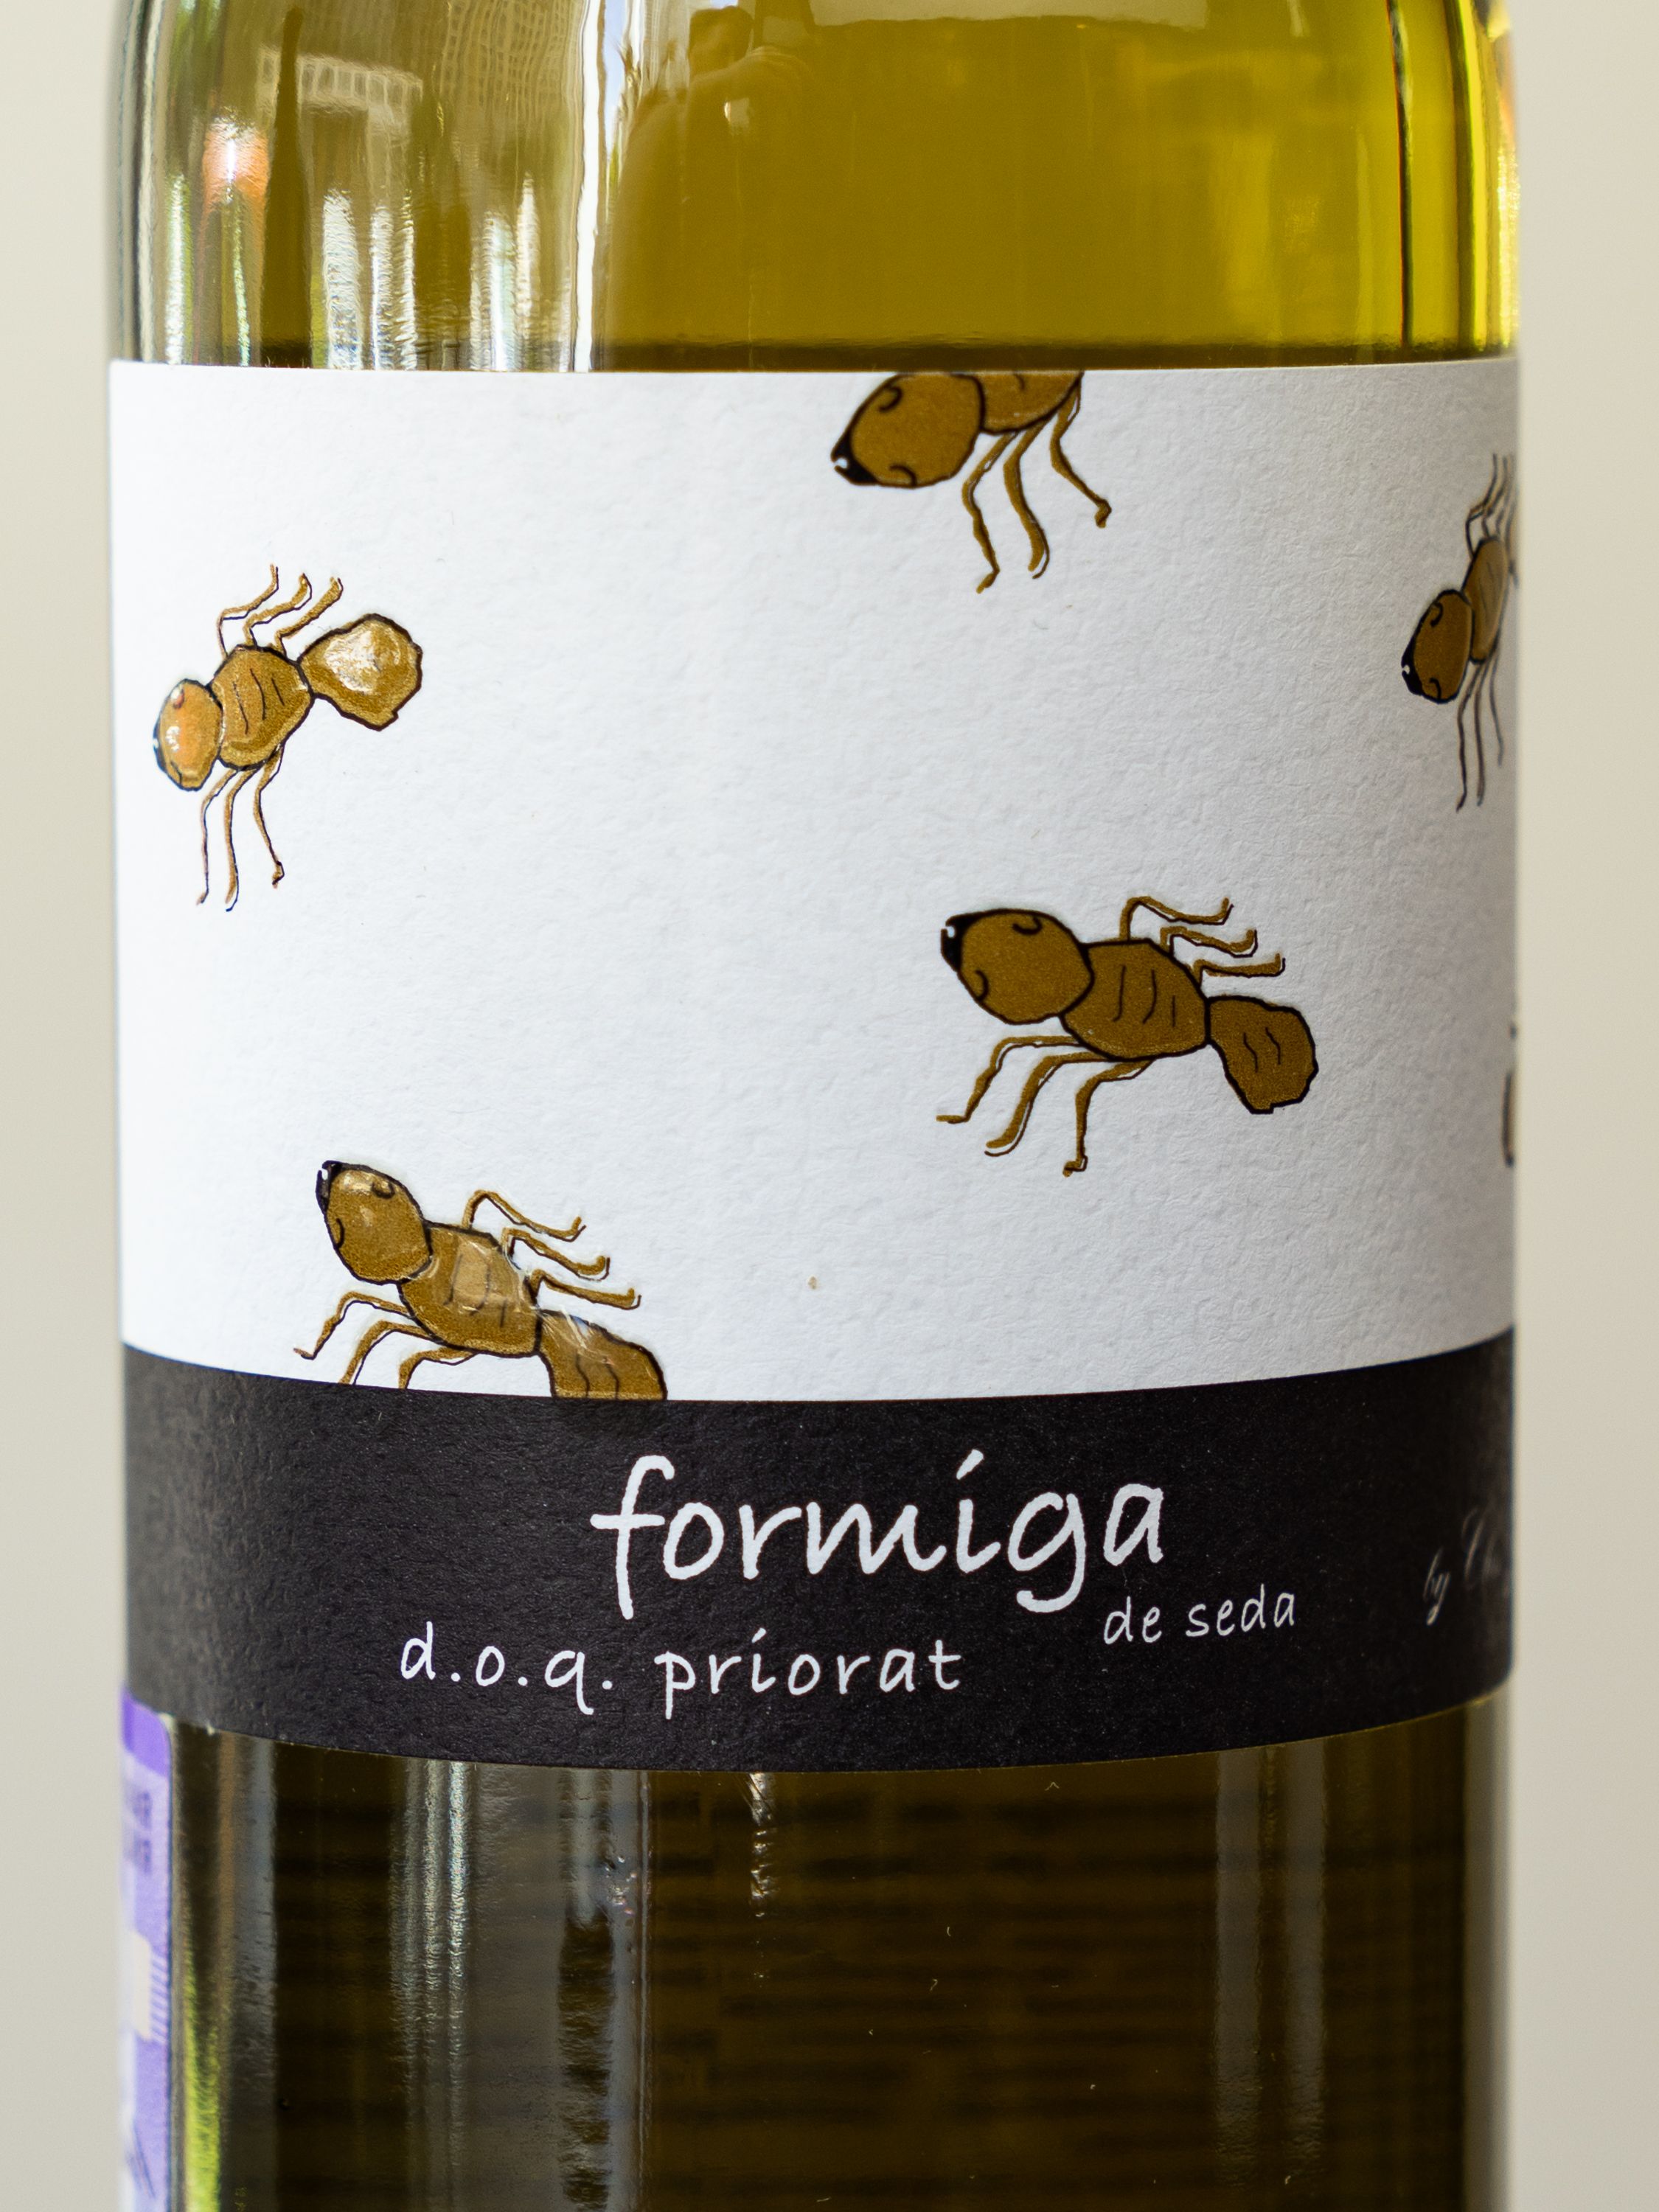 Вино Domini de la Cartoixa Formiga de Seda Priorat / Формига де Седа Приорат Домини де ла Картоикша